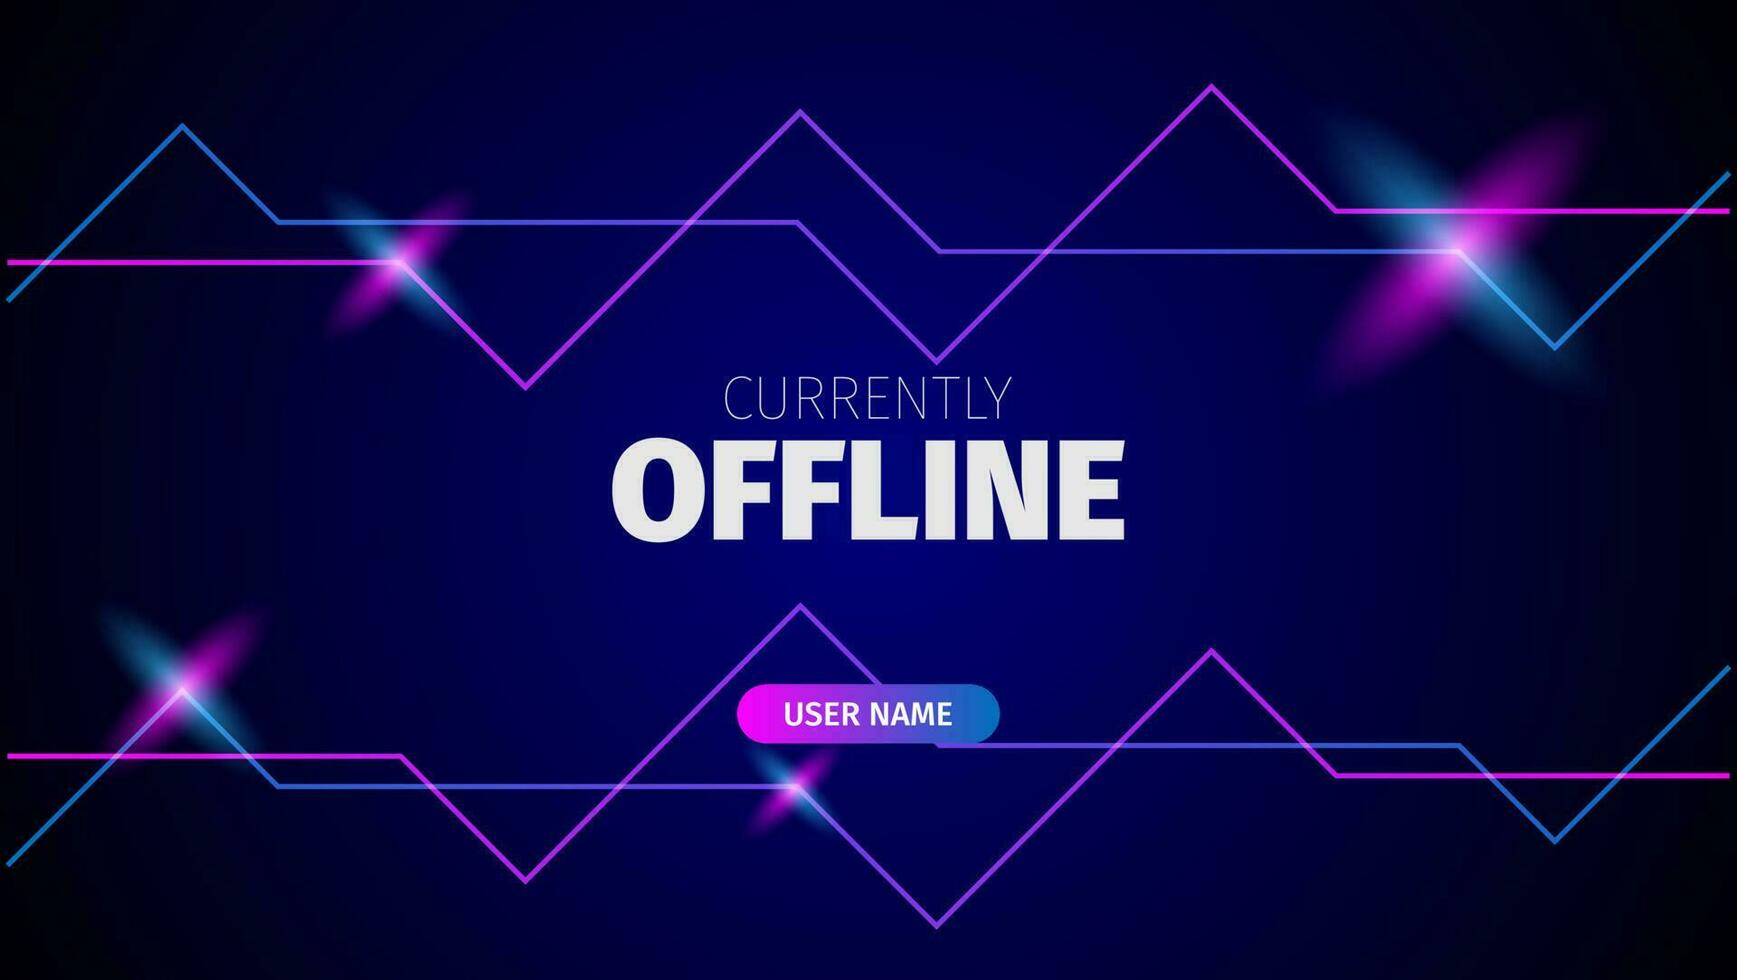 Offline-Streaming-Bannerhintergrund mit blauem und rosa Neonlicht vektor